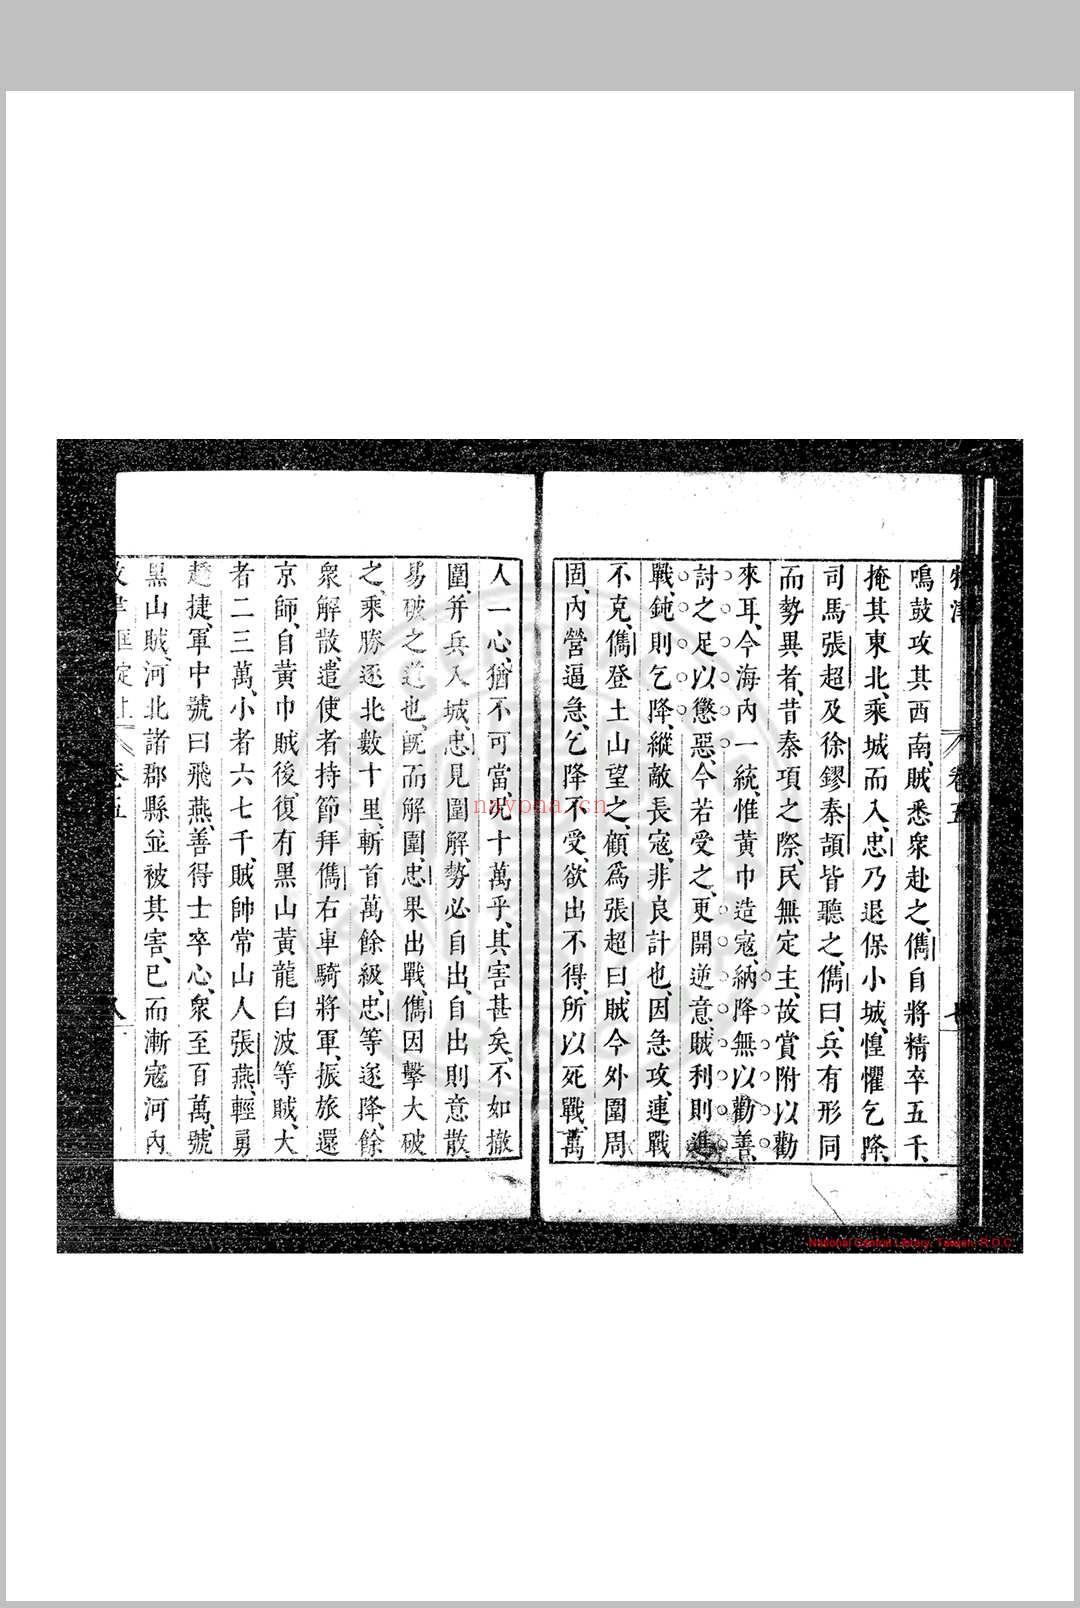 牧津 (明)祁承㸁撰 明天启间(1621-1627)原刊本